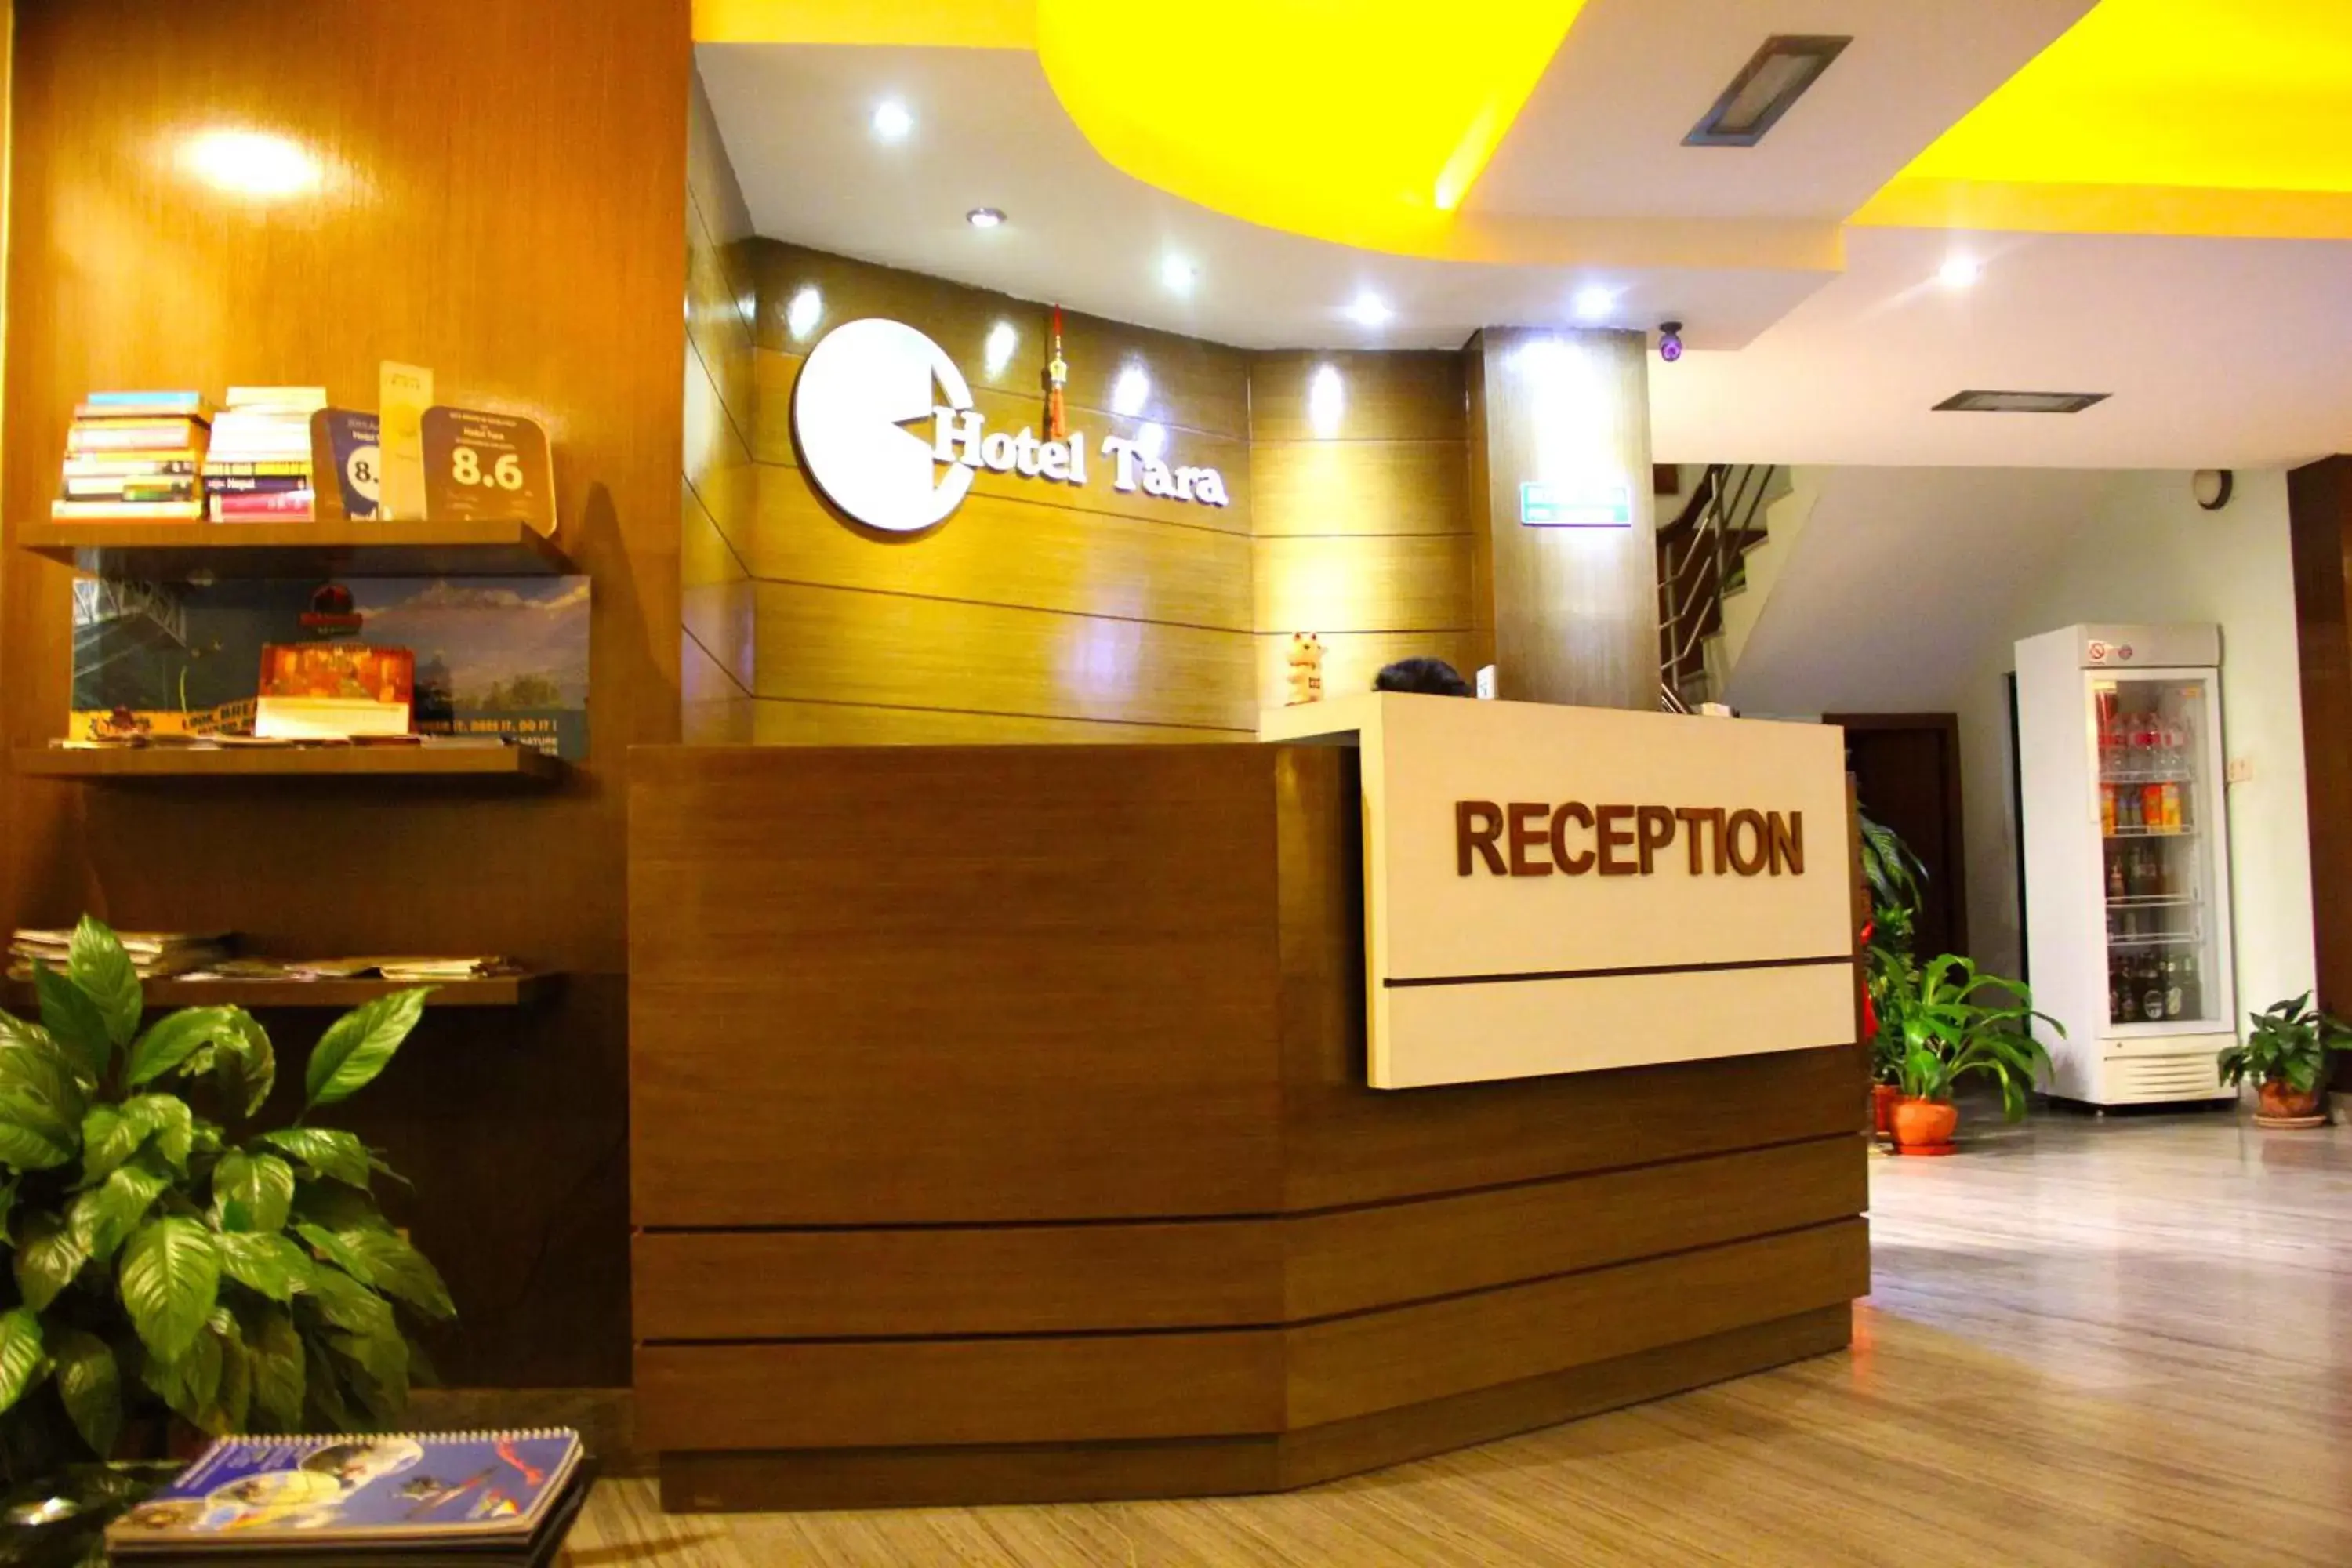 Lobby or reception in Hotel Tara